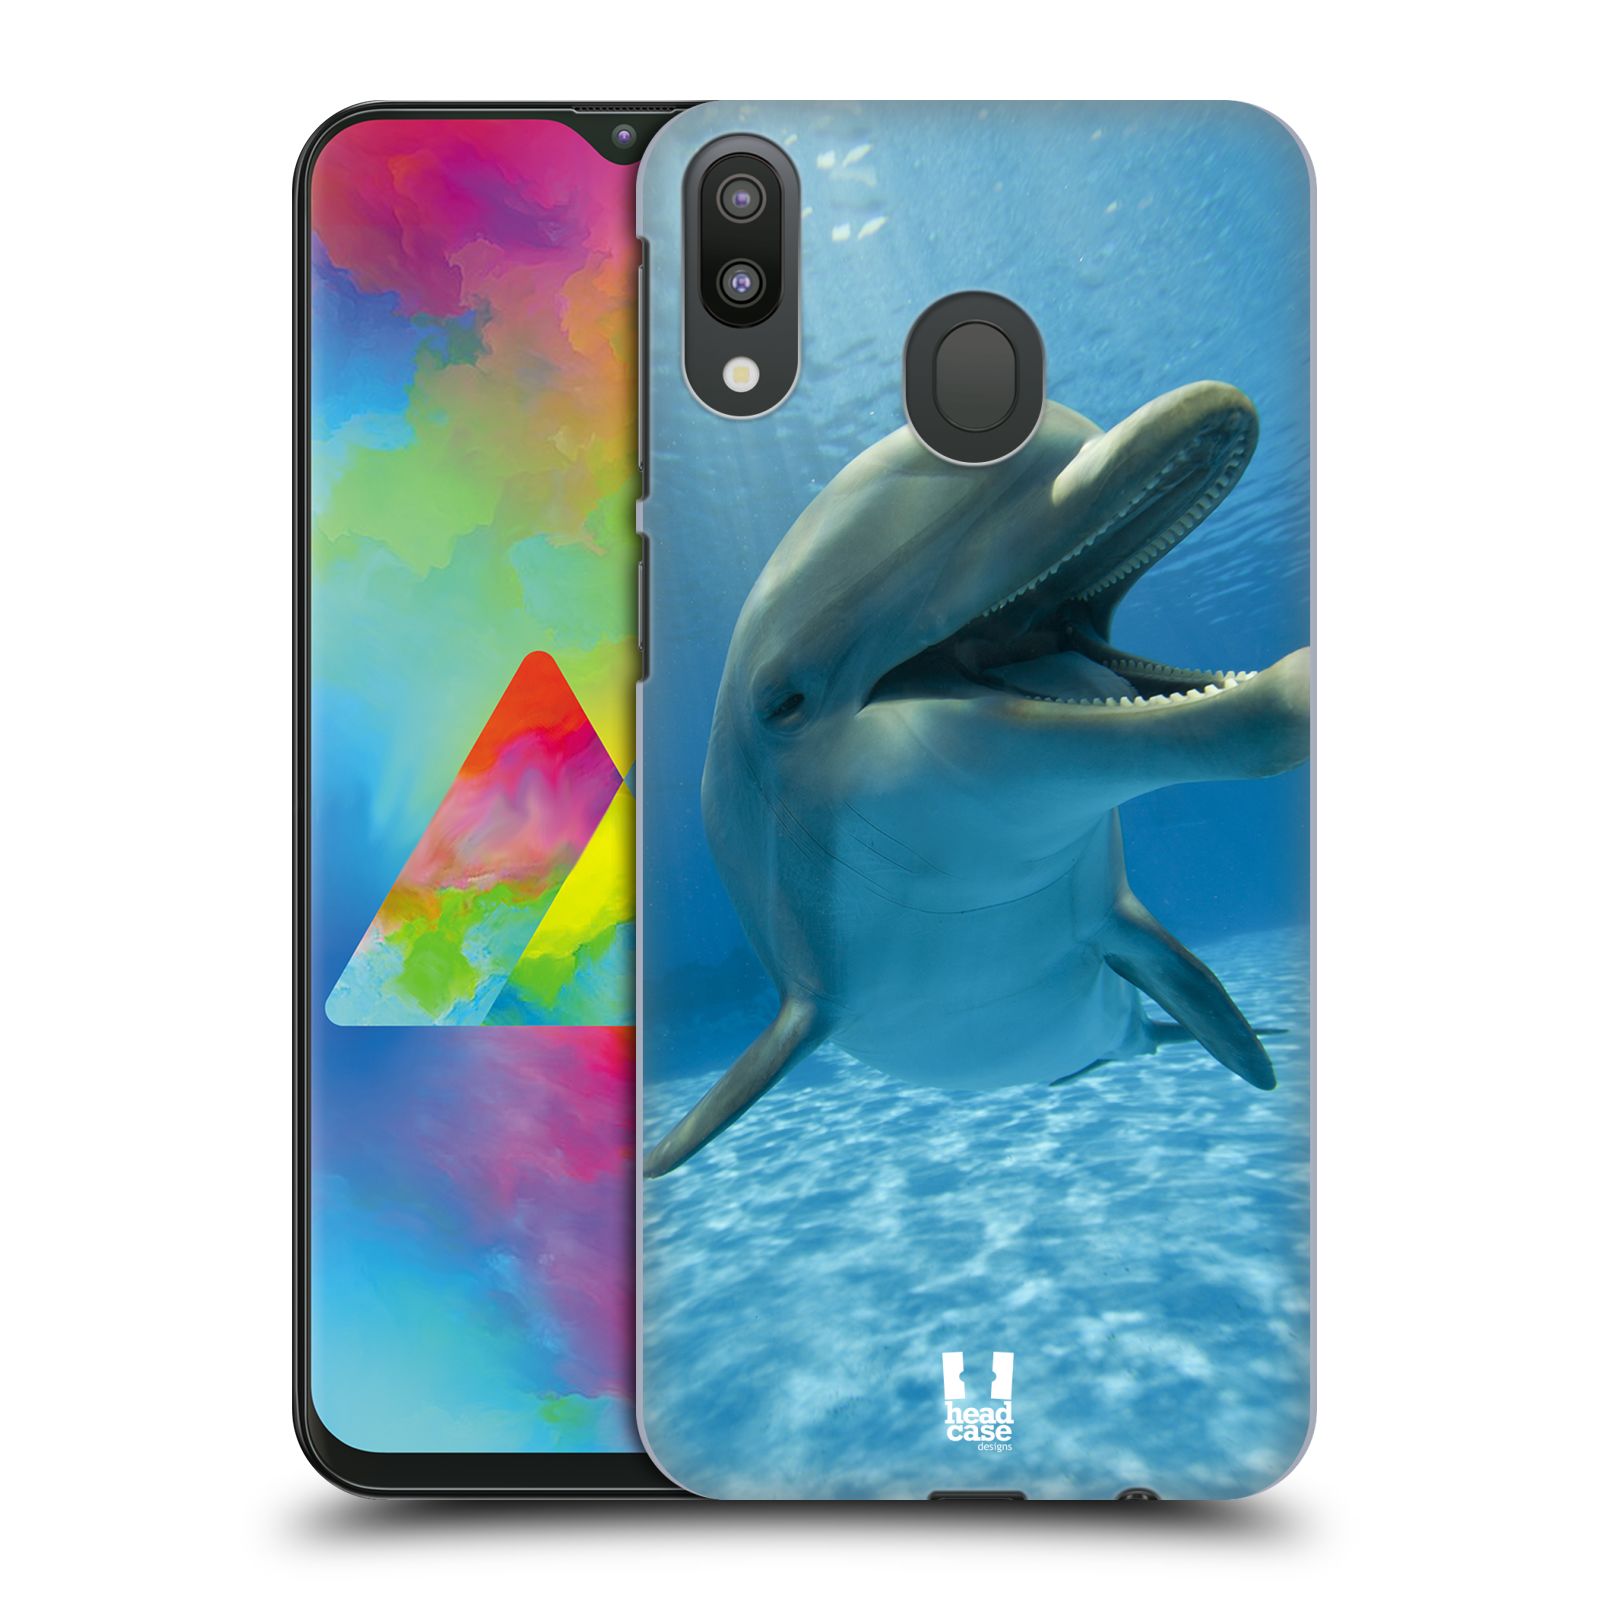 Zadní obal pro mobil Samsung Galaxy M20 - HEAD CASE - Svět zvířat delfín v moři